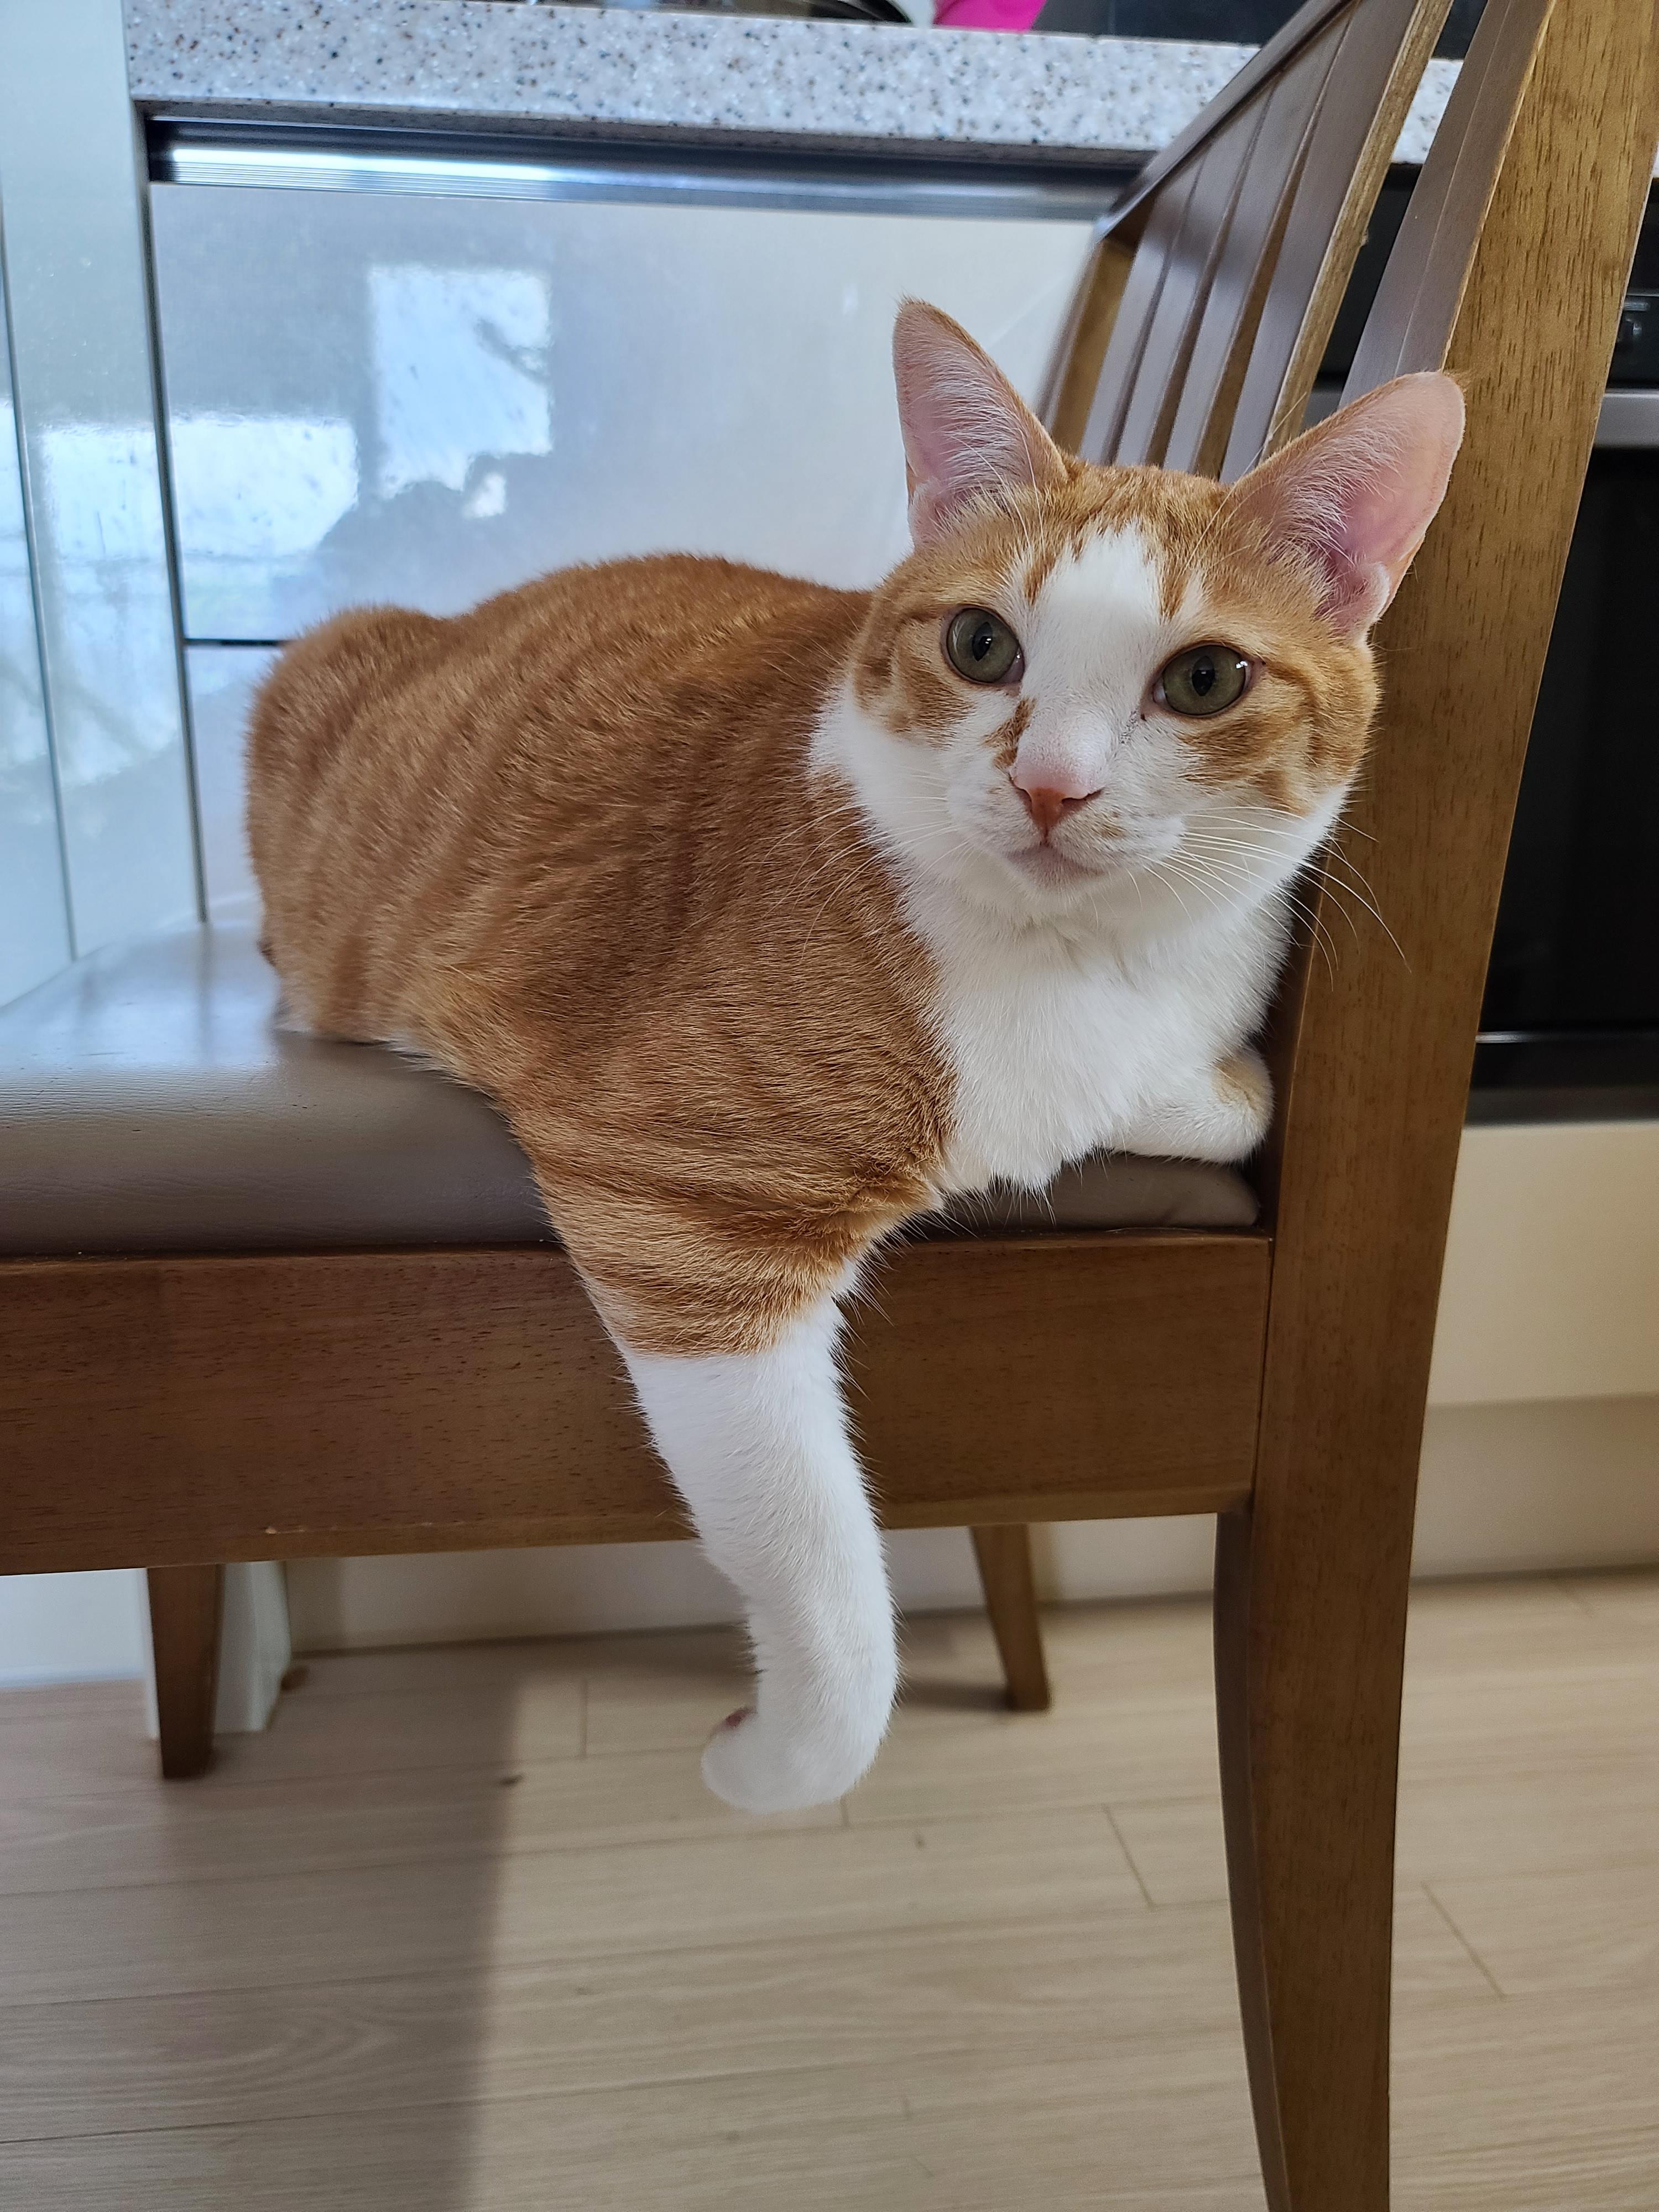 의자에 앉아서 발꼬락만 까딱까닥 하는데 너무 귀여운 고양이